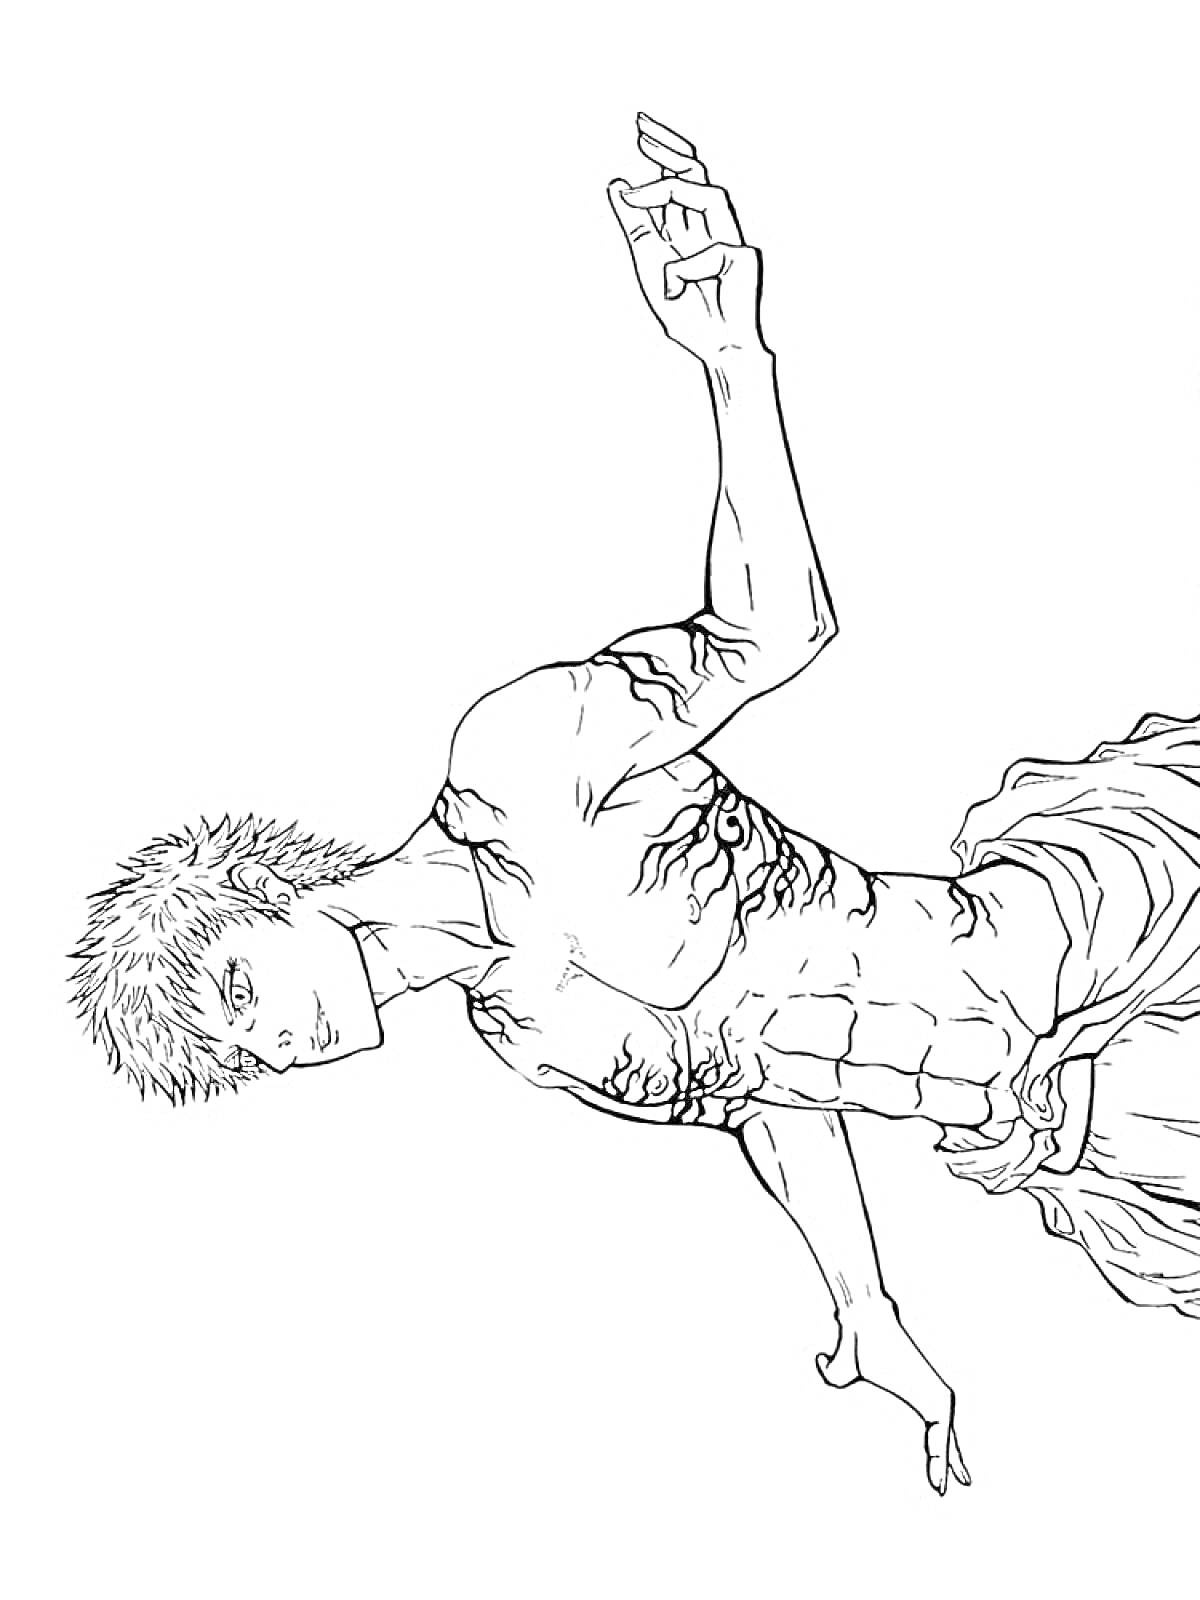 Раскраска Мускулистый персонаж с короткими волосами в рваной одежде